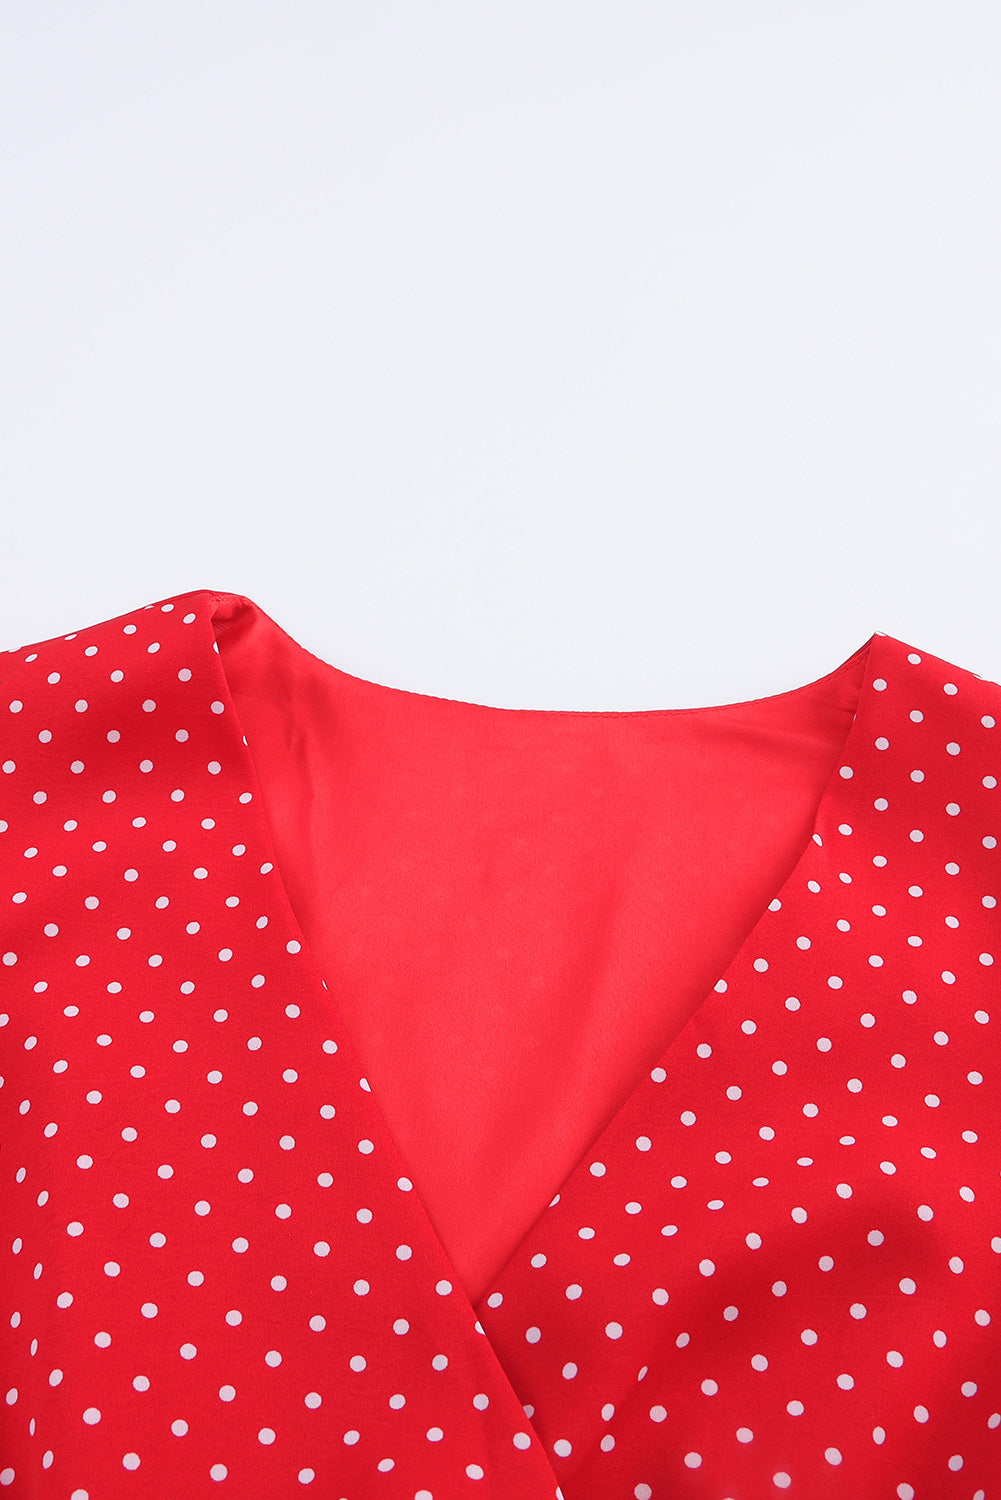 Red Polka Dot V Neck Ruffle Shoulder Short Dress